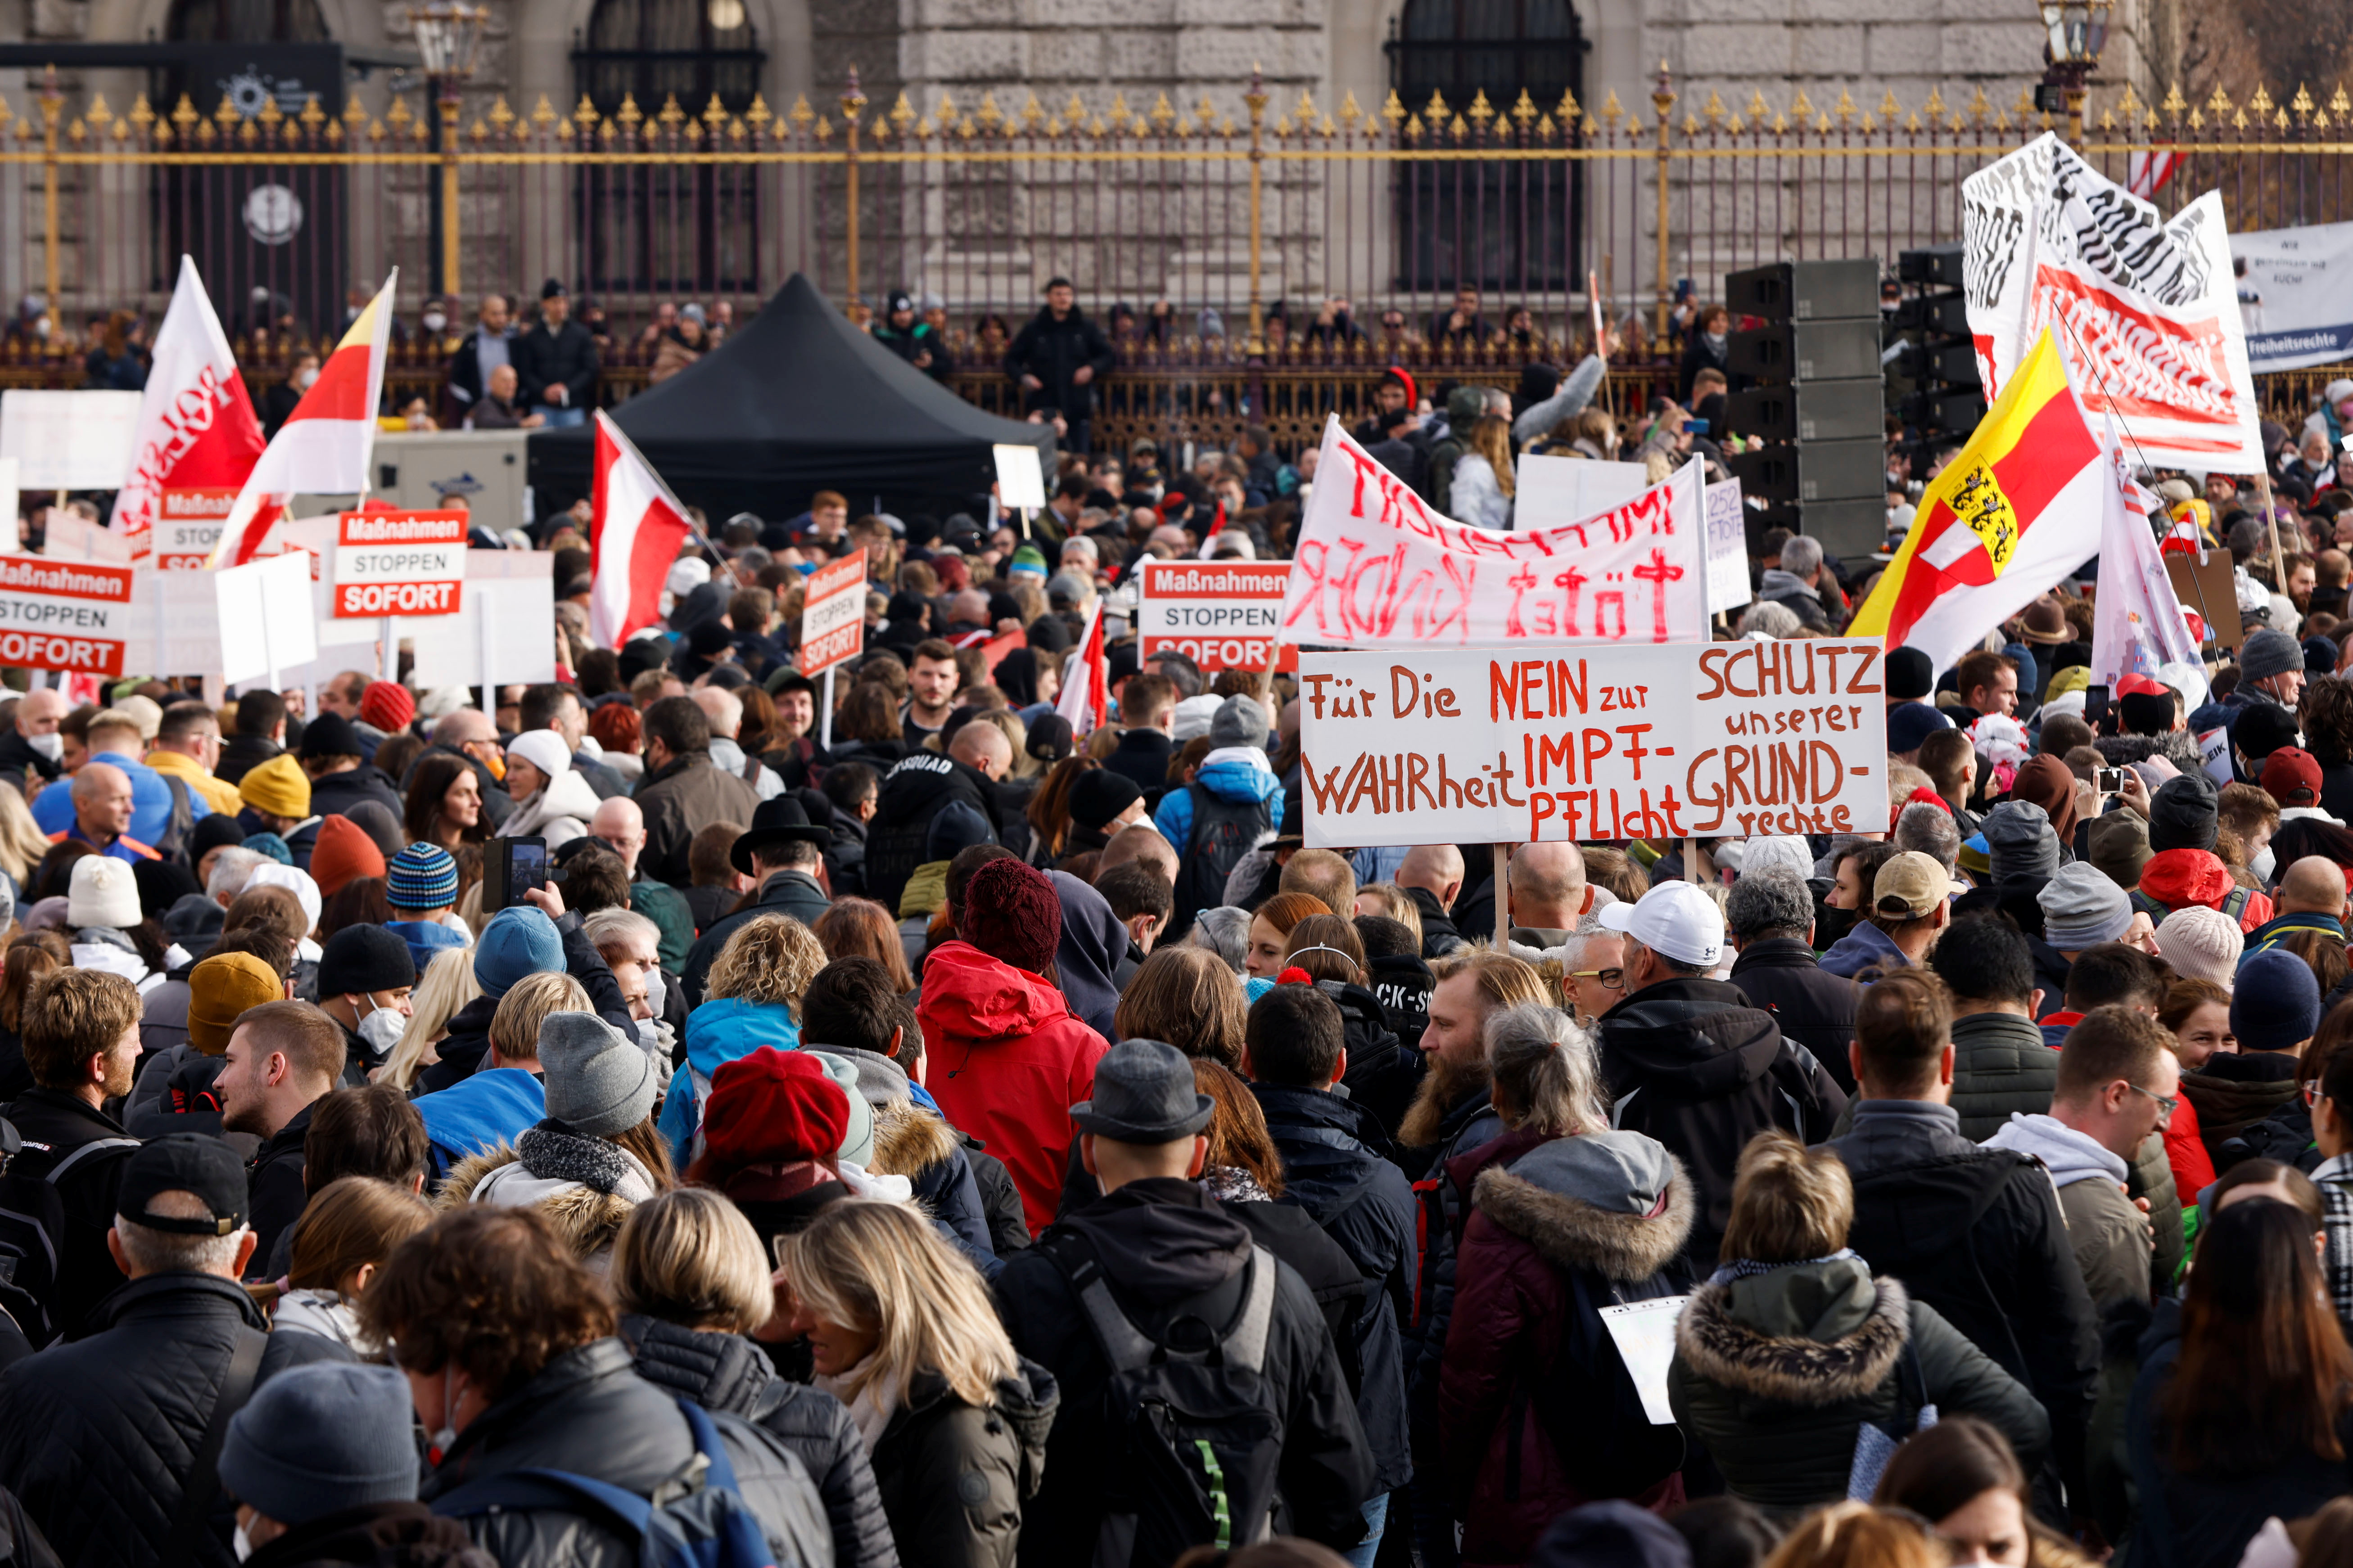 Demonstranti drže zastave i plakate dok se okupljaju na prosvjedu protiv mjera zaraze korona virusom (COVID-19) u Beču, Austrija, 20. studenog 2021. Plakat glasi: "Za istinu, ne obveznom cijepljenju, zaštitite naša prava." REUTERS/Leonhard Foeger